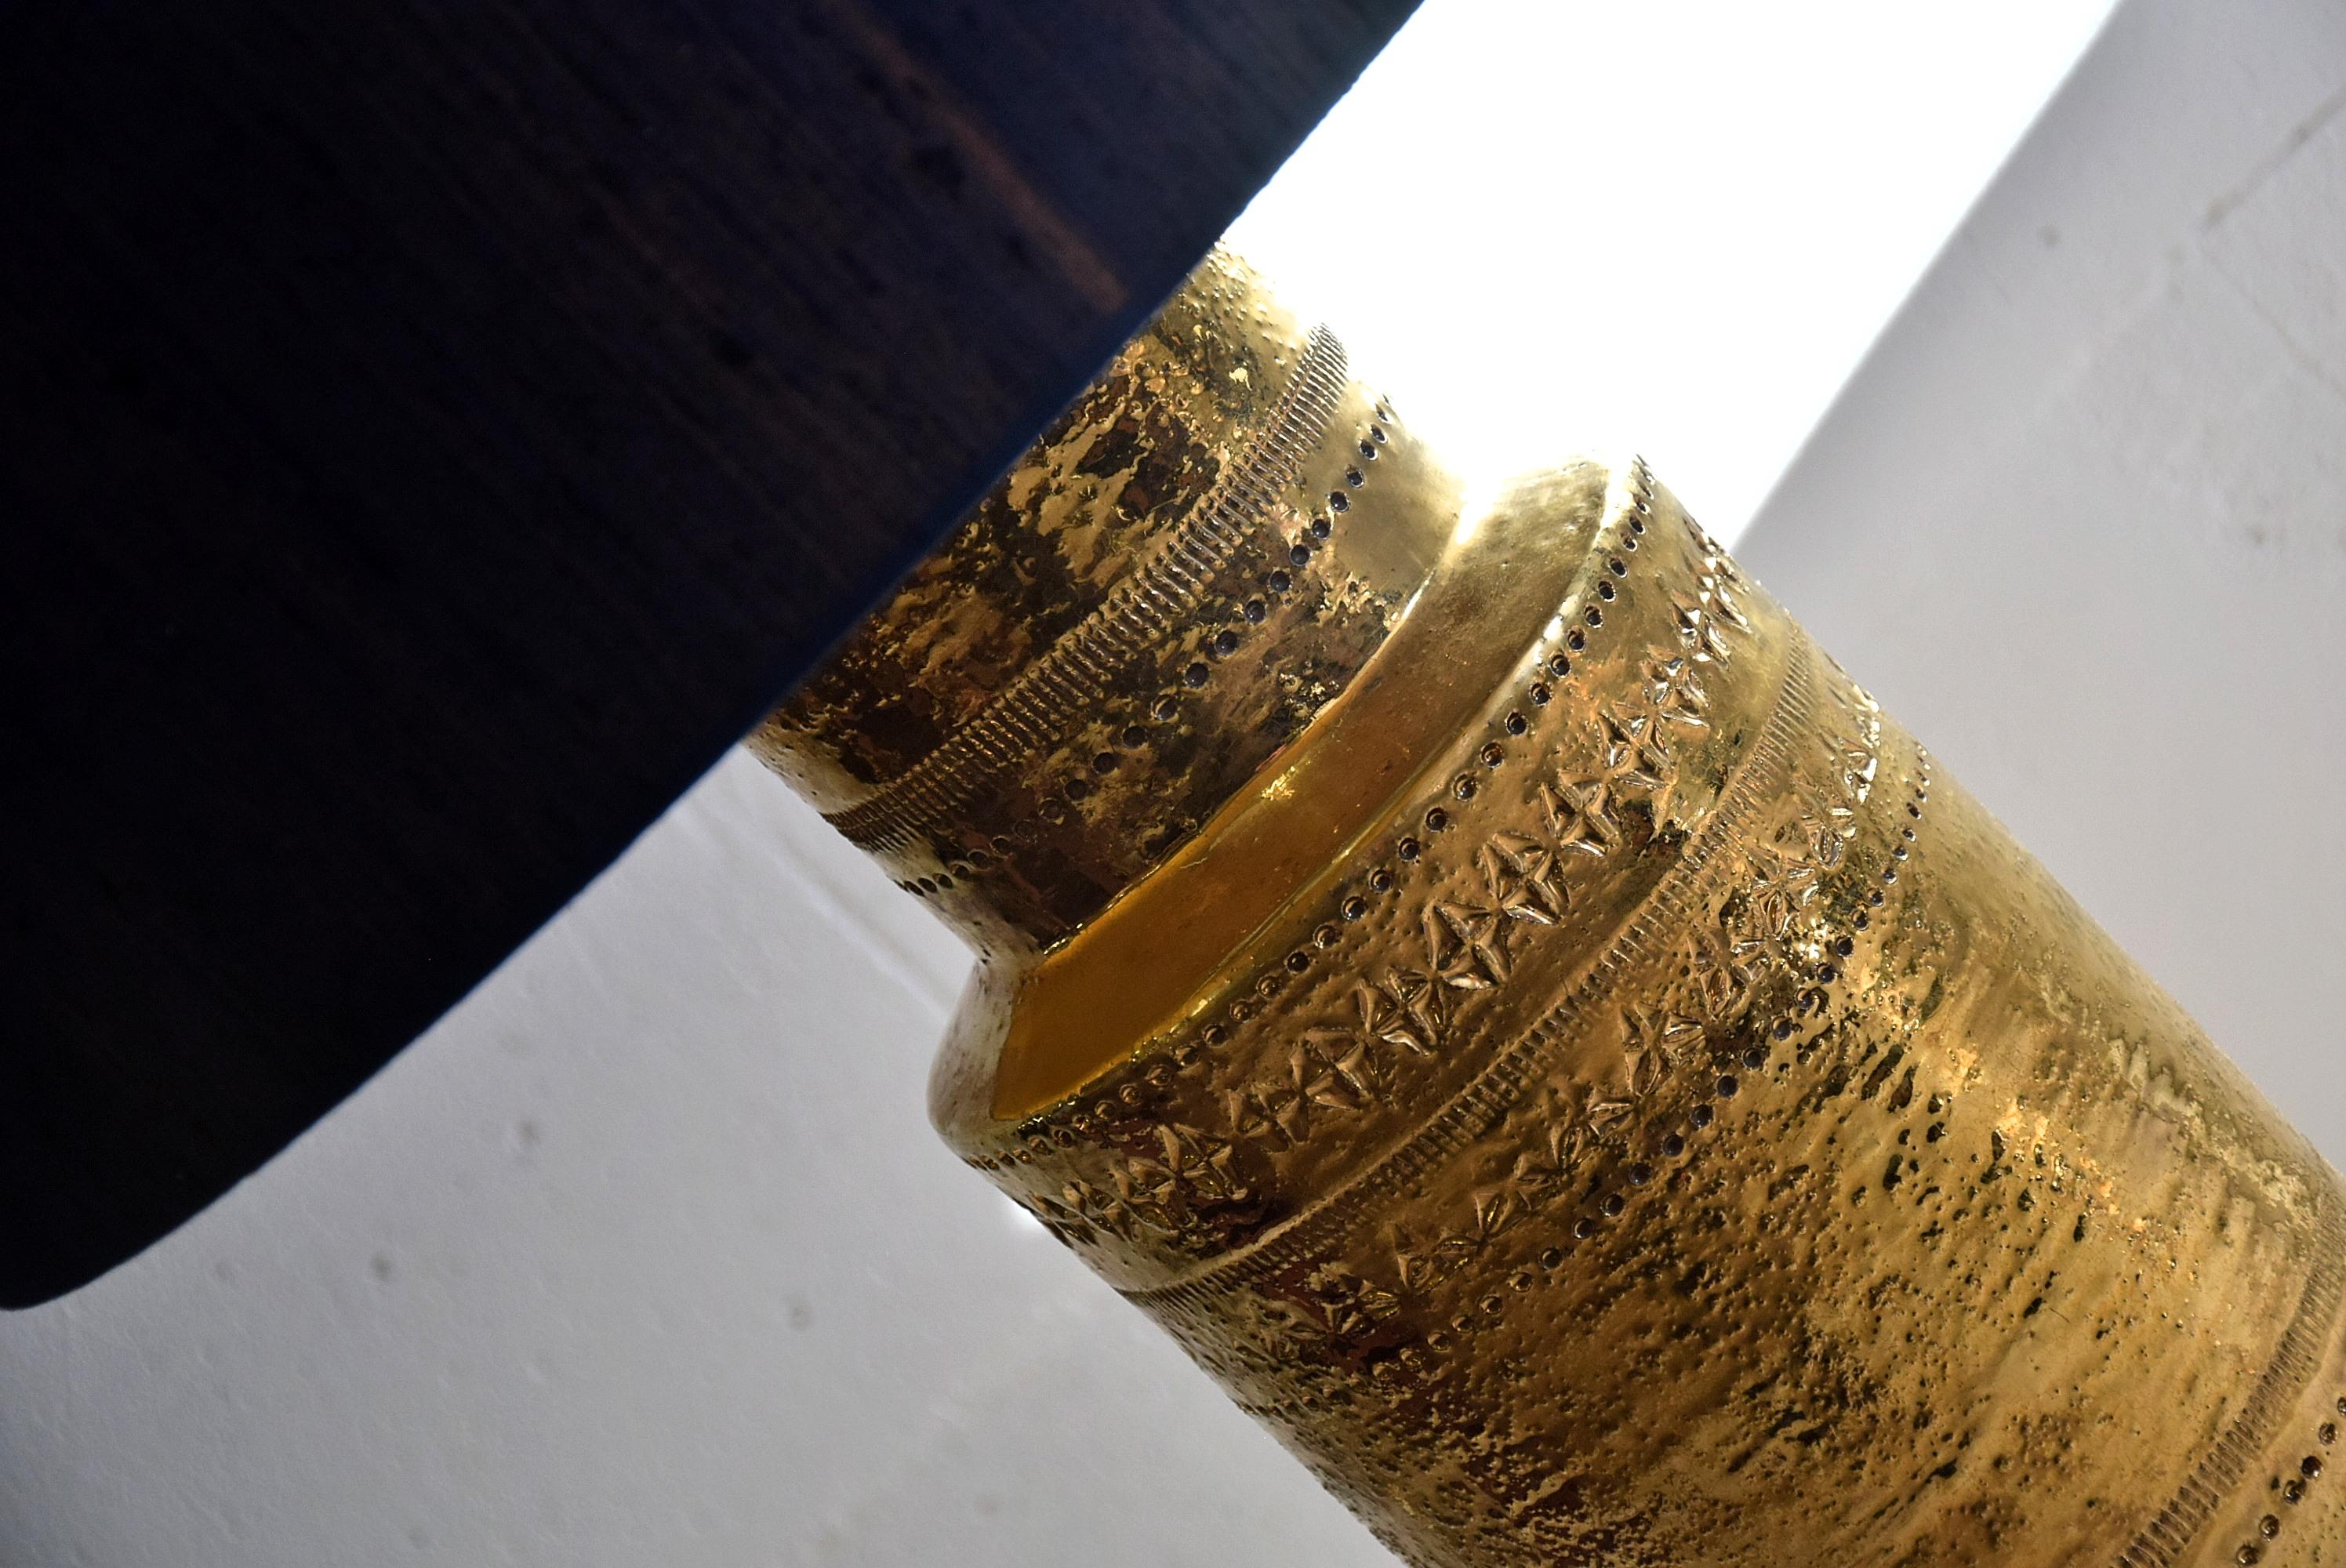 Lampe de table Bitossi en céramique Aldo Londi, de style moderne du milieu du siècle, avec un cylindre métallique doré et un nouvel abat-jour en soie bleu foncé. Grand, 95 cm - 37.40 inches, corps cylindrique en parfait état avec col étagé en